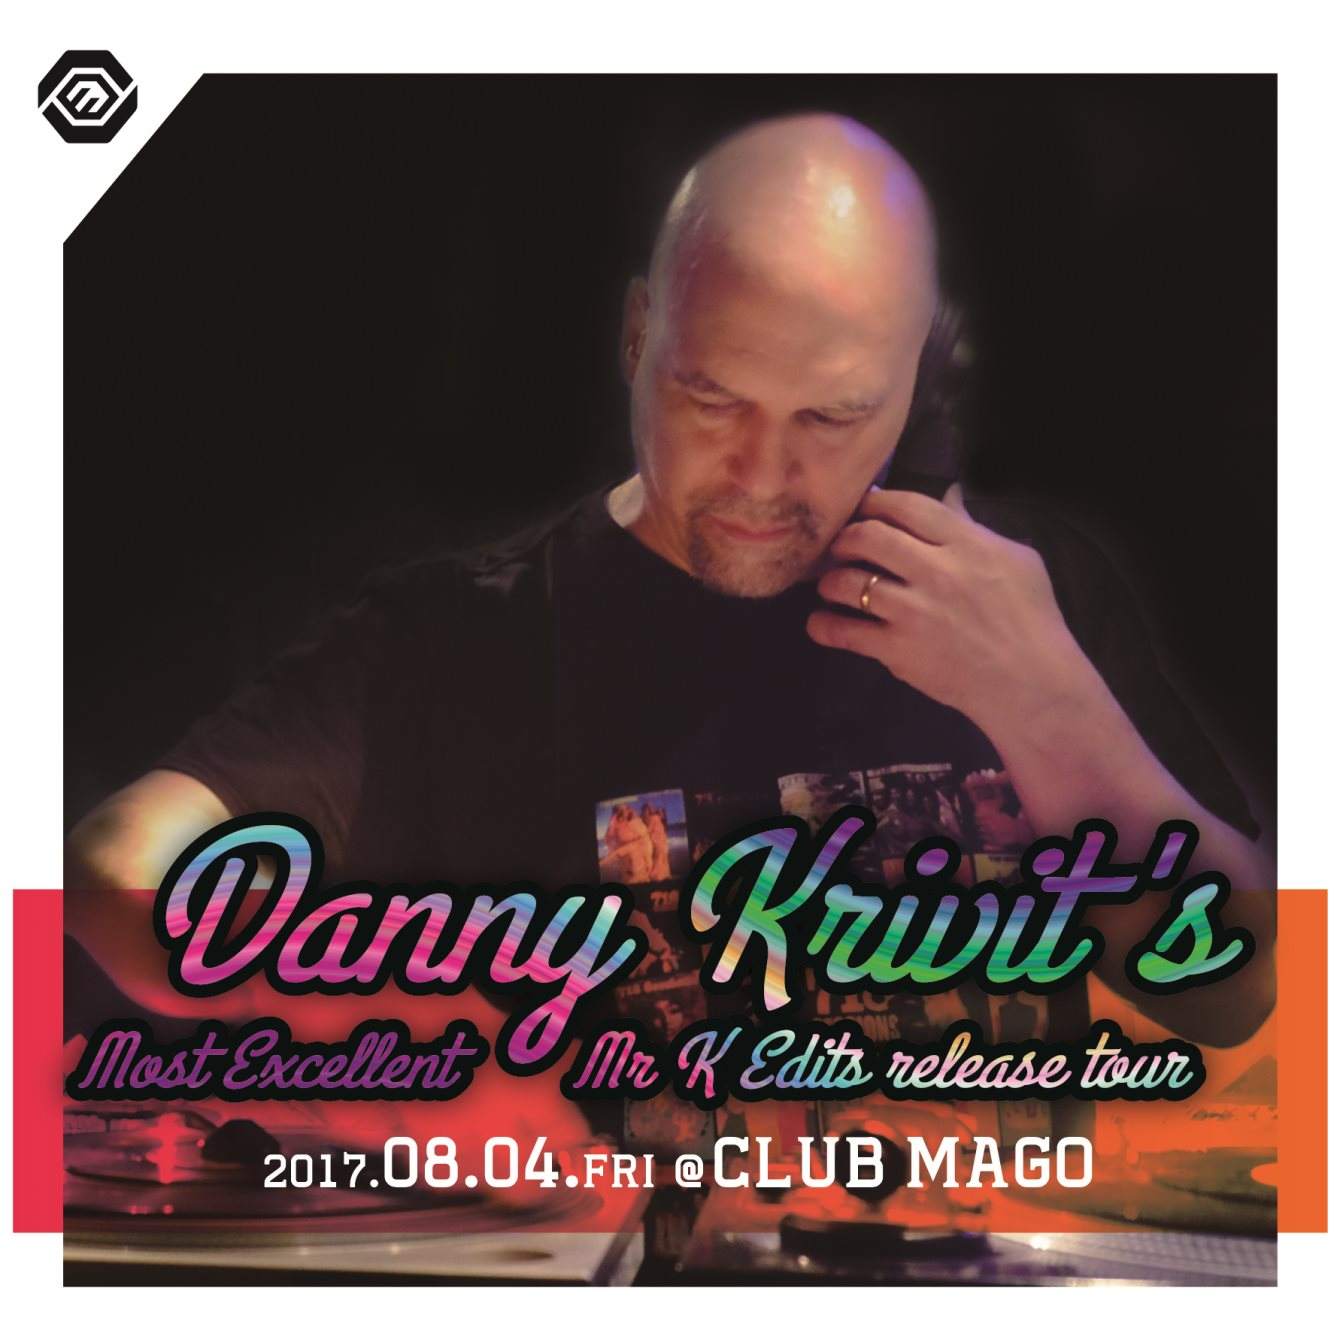 Danny Krivit’s “Most Excellent Mr K Edits” release tour - Página frontal